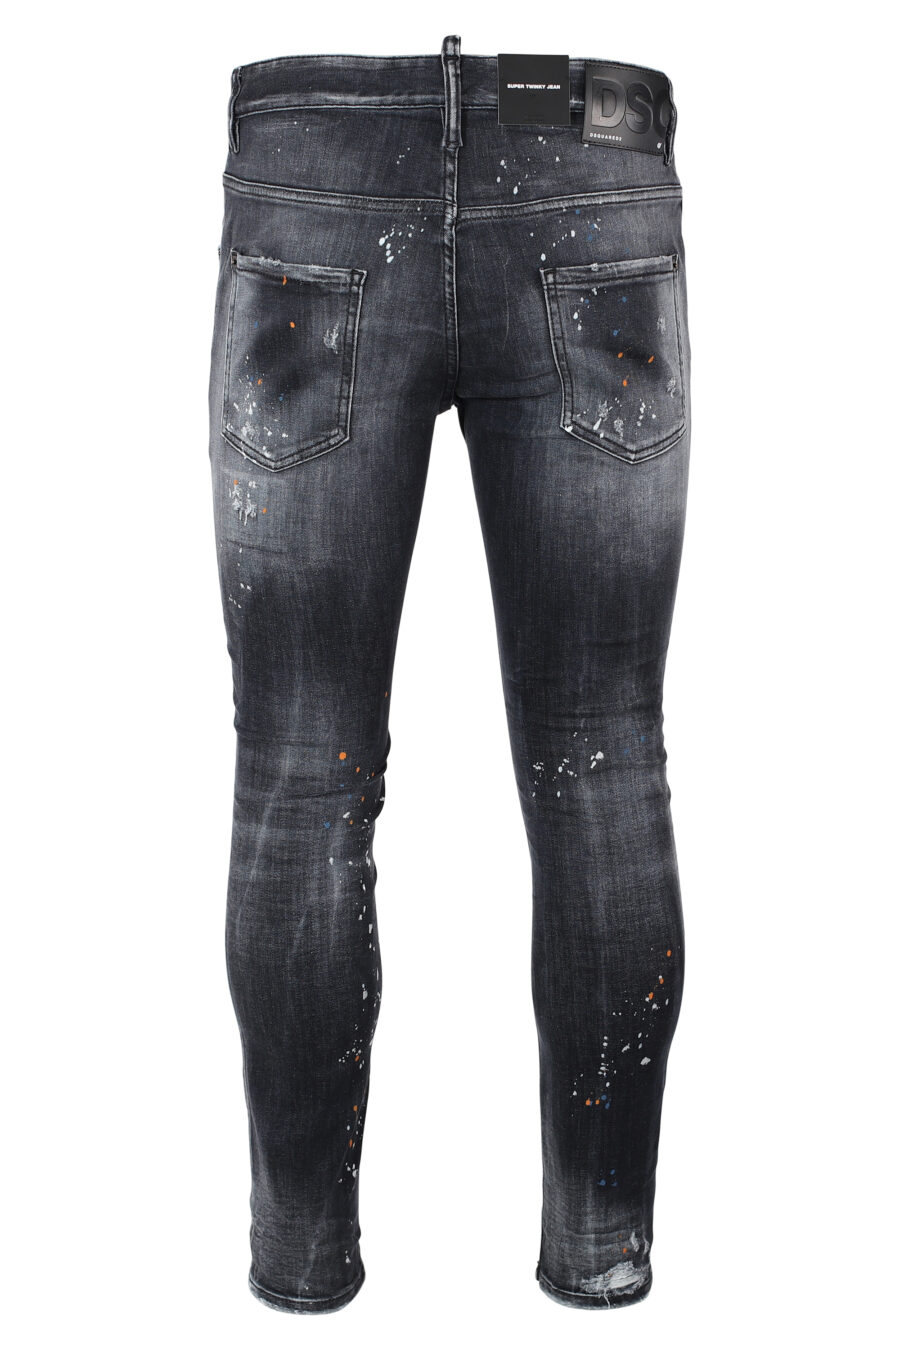 Pantalón vaquero negro "super twinky jean" desgastado y rotos - IMG 9891